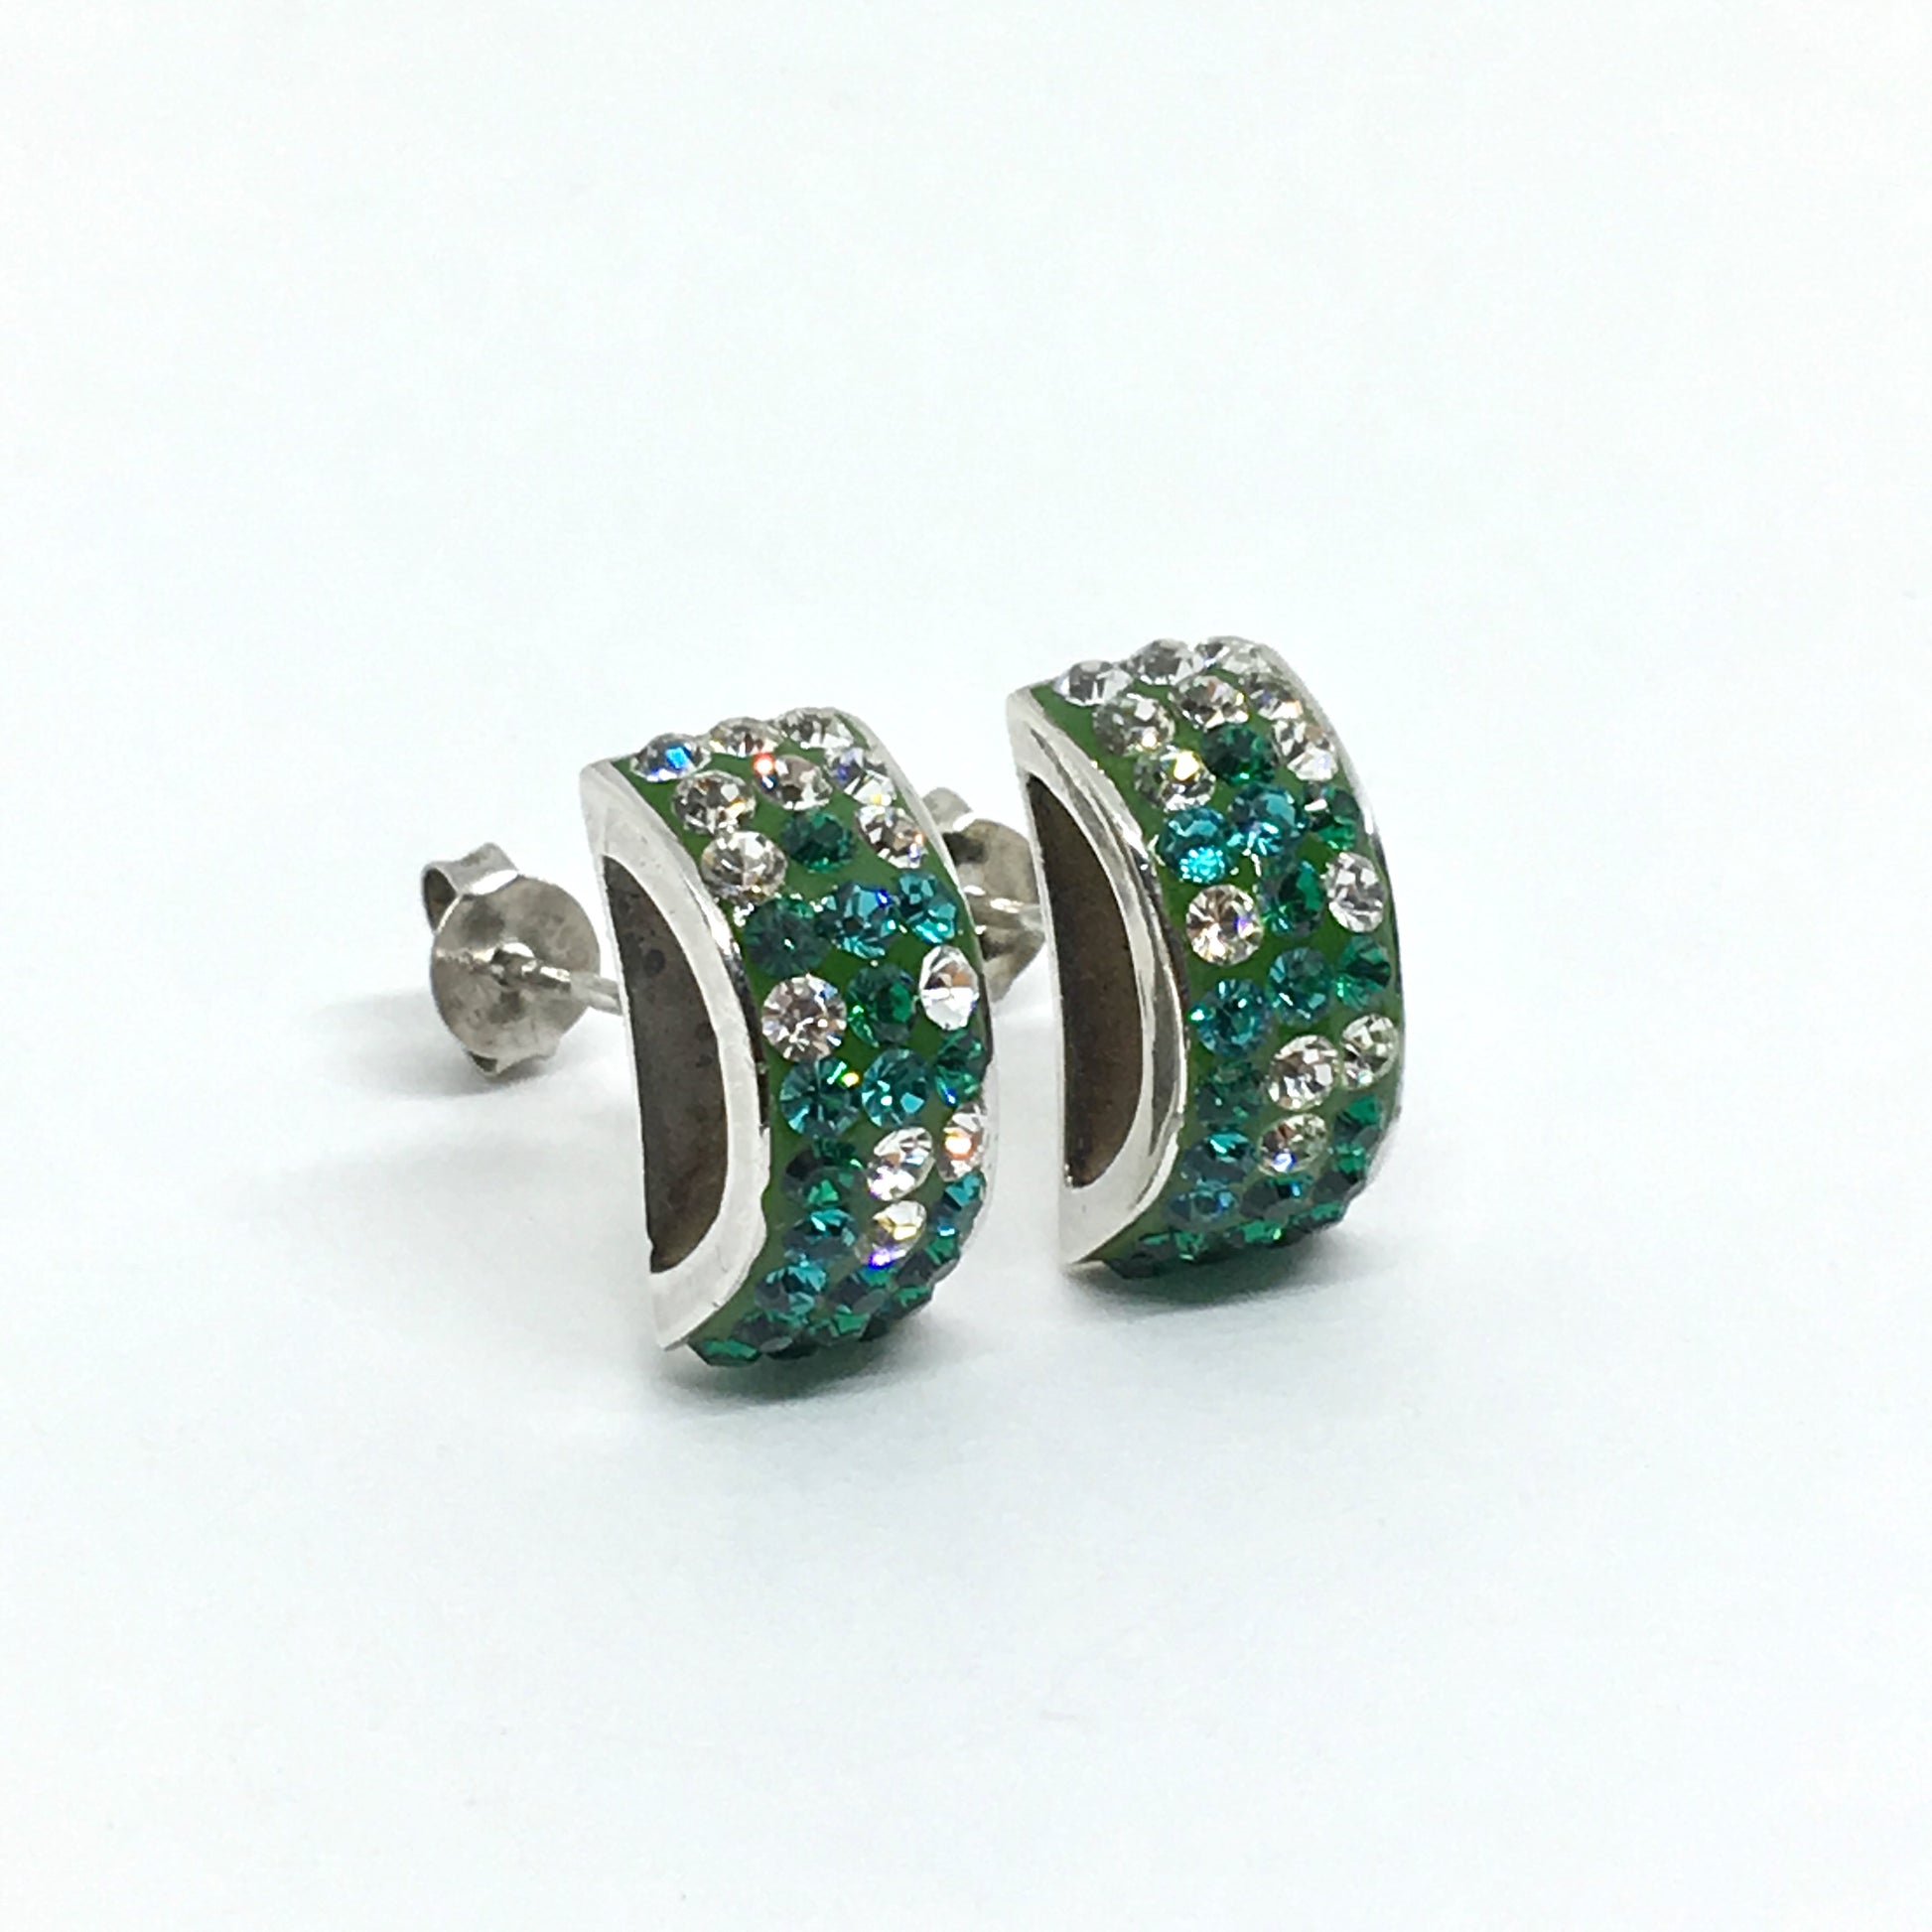 Earrings - Shimmery Emerald Green Crystal Rolo Style Sterling Silver Earrings - Blingschlingers Jewelry online - USA